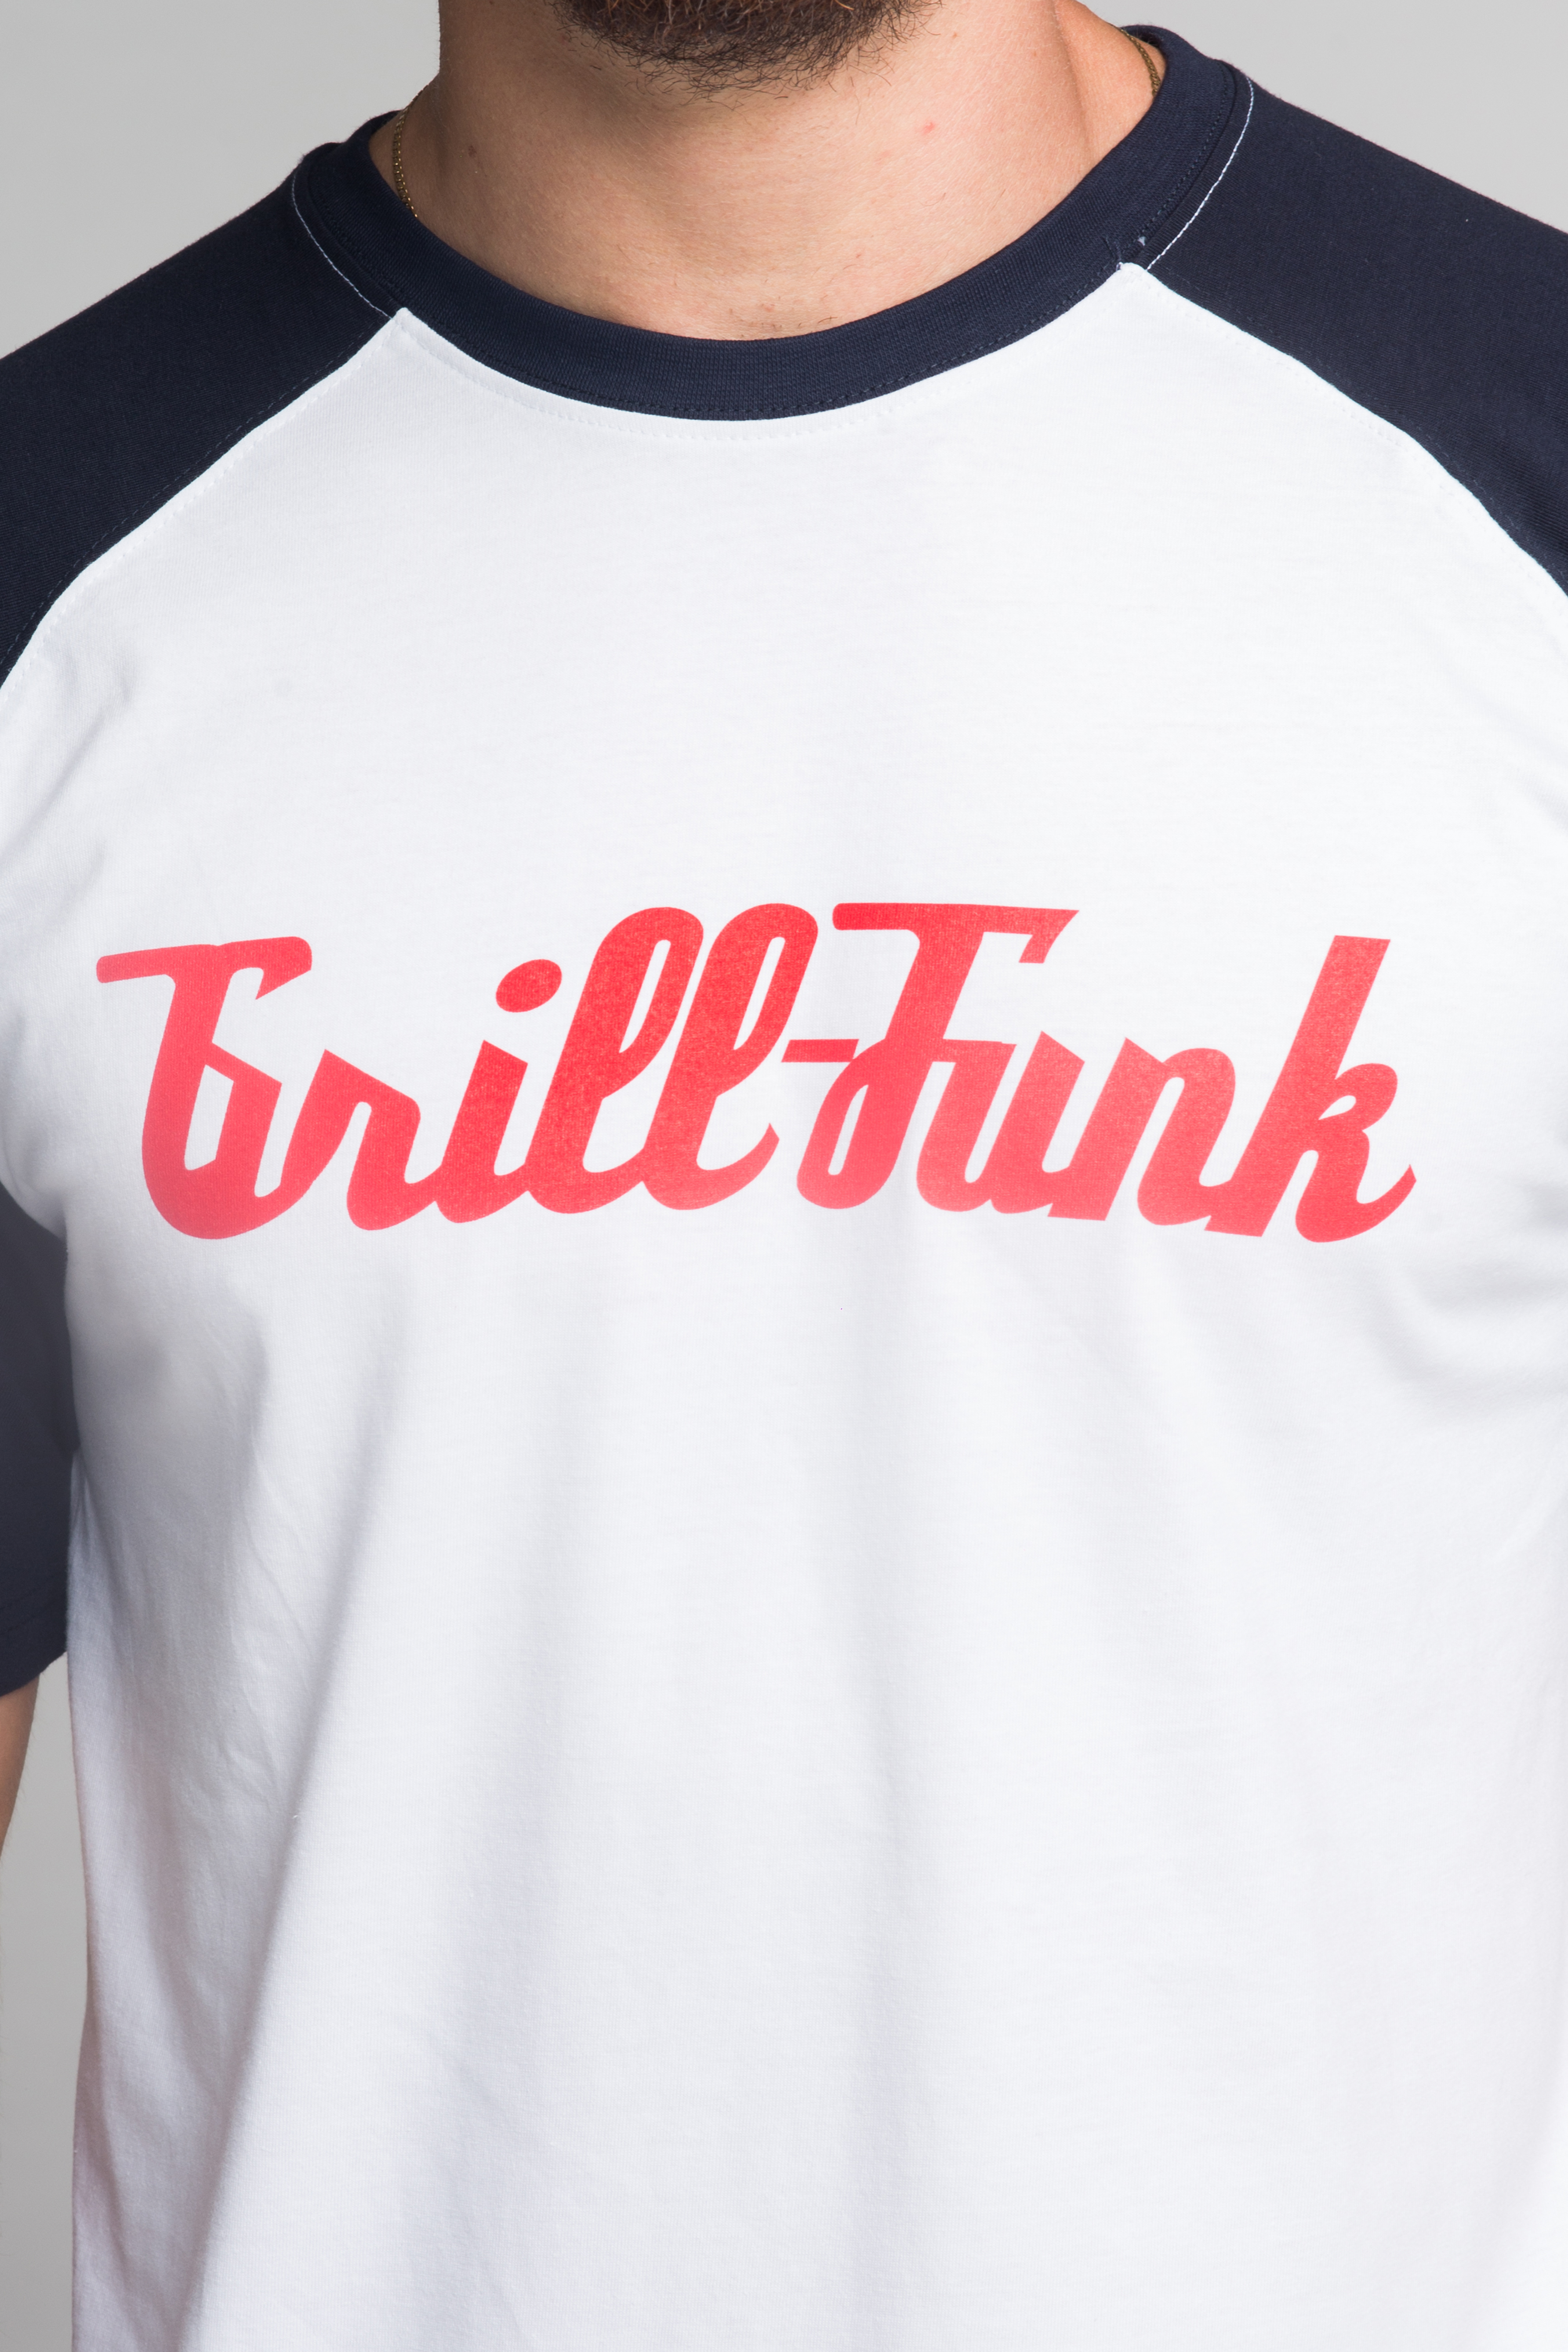 T-shirt męski Grill-Funk Contrast - biało/granatowa